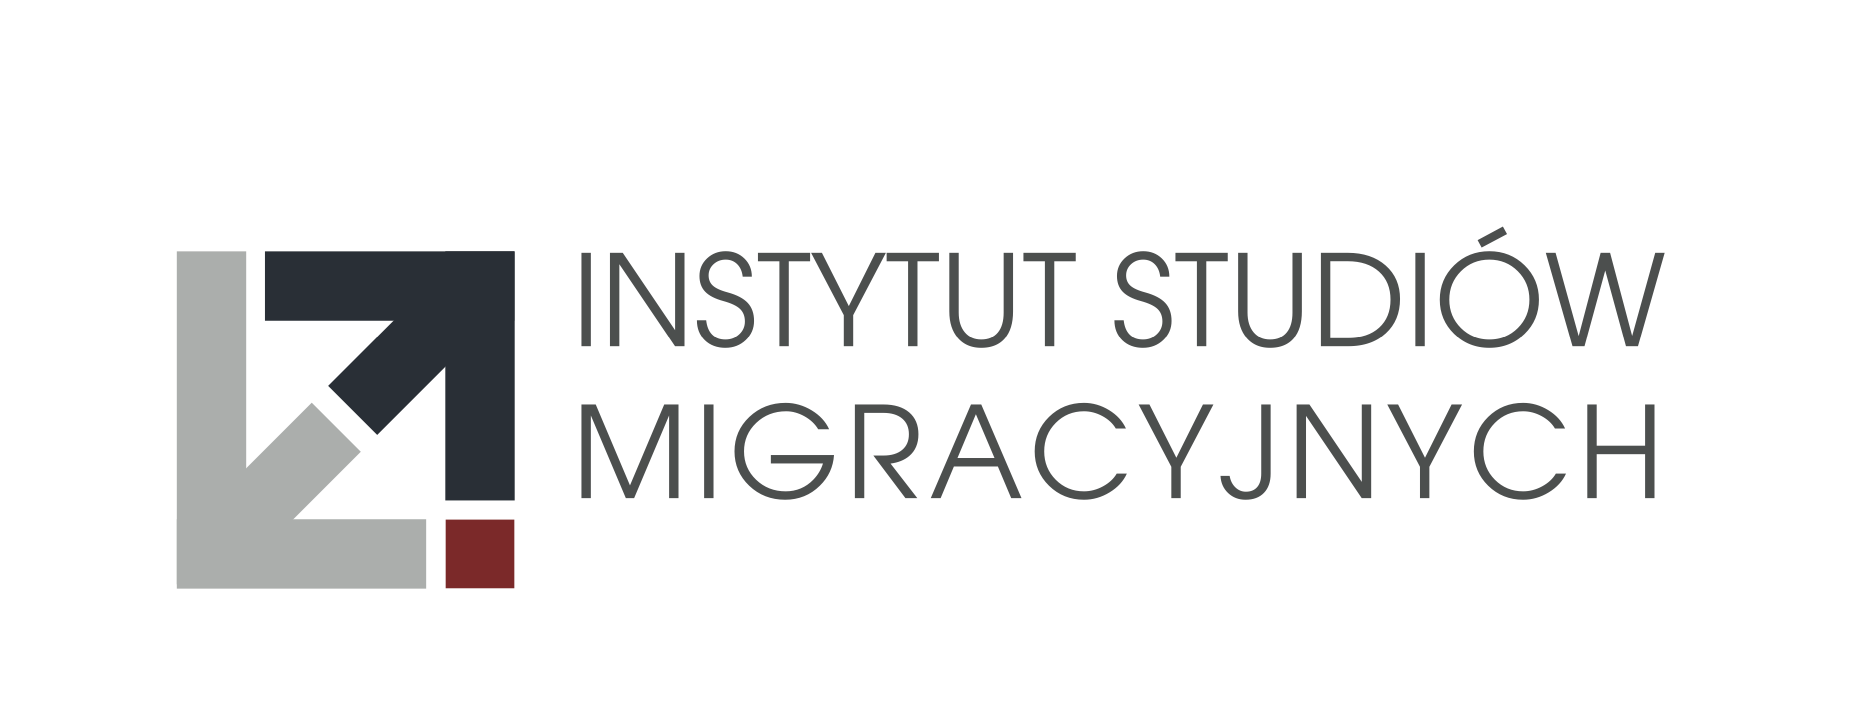 Instytut Studiów Migracyjnych 